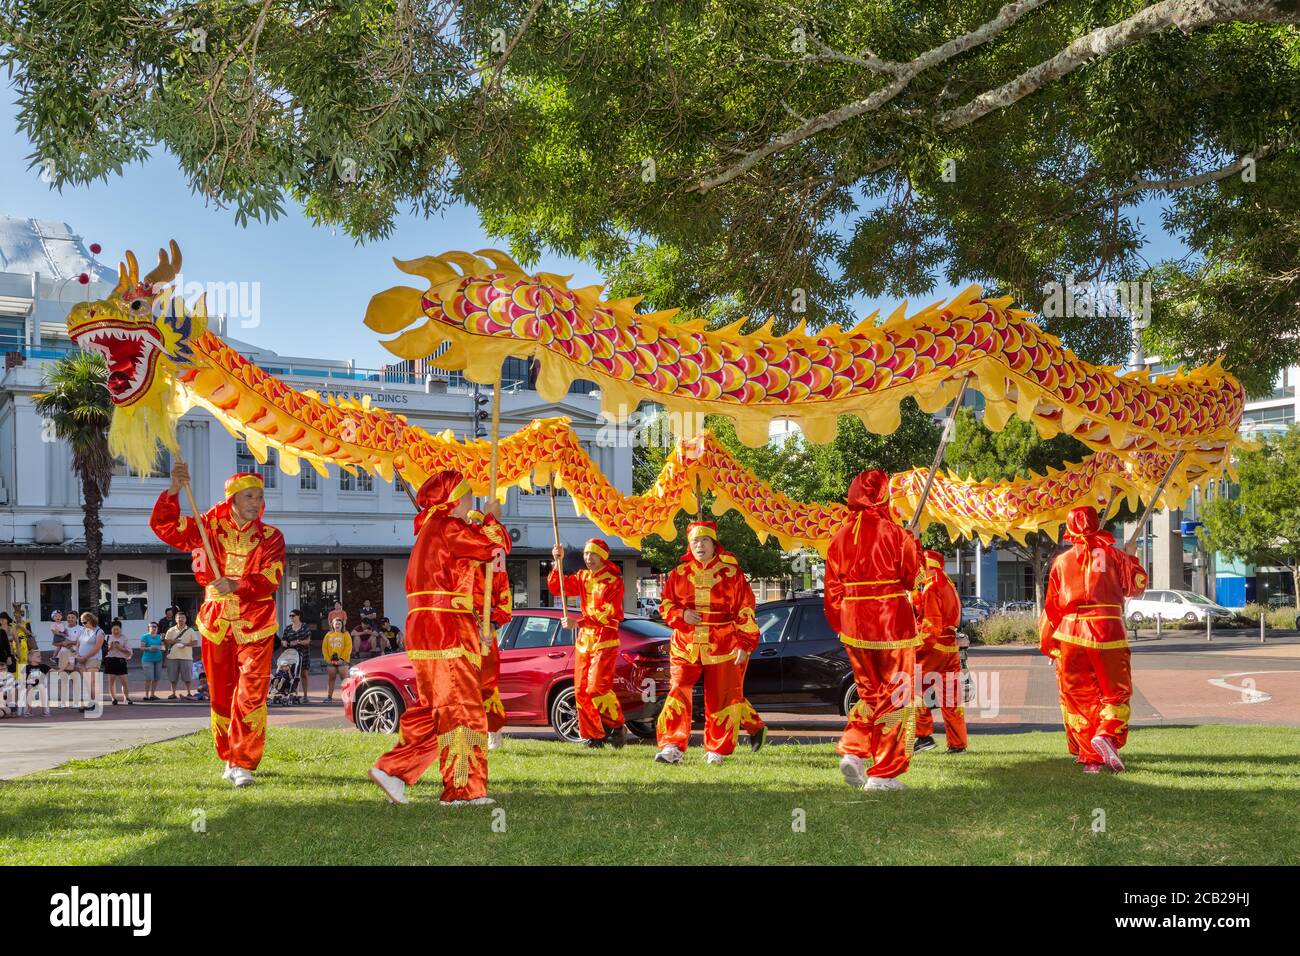 Un gruppo di ballerini cinesi con abiti colorati in un parco durante le celebrazioni del Capodanno cinese. Hamilton, Nuova Zelanda, 2/16/2019 Foto Stock